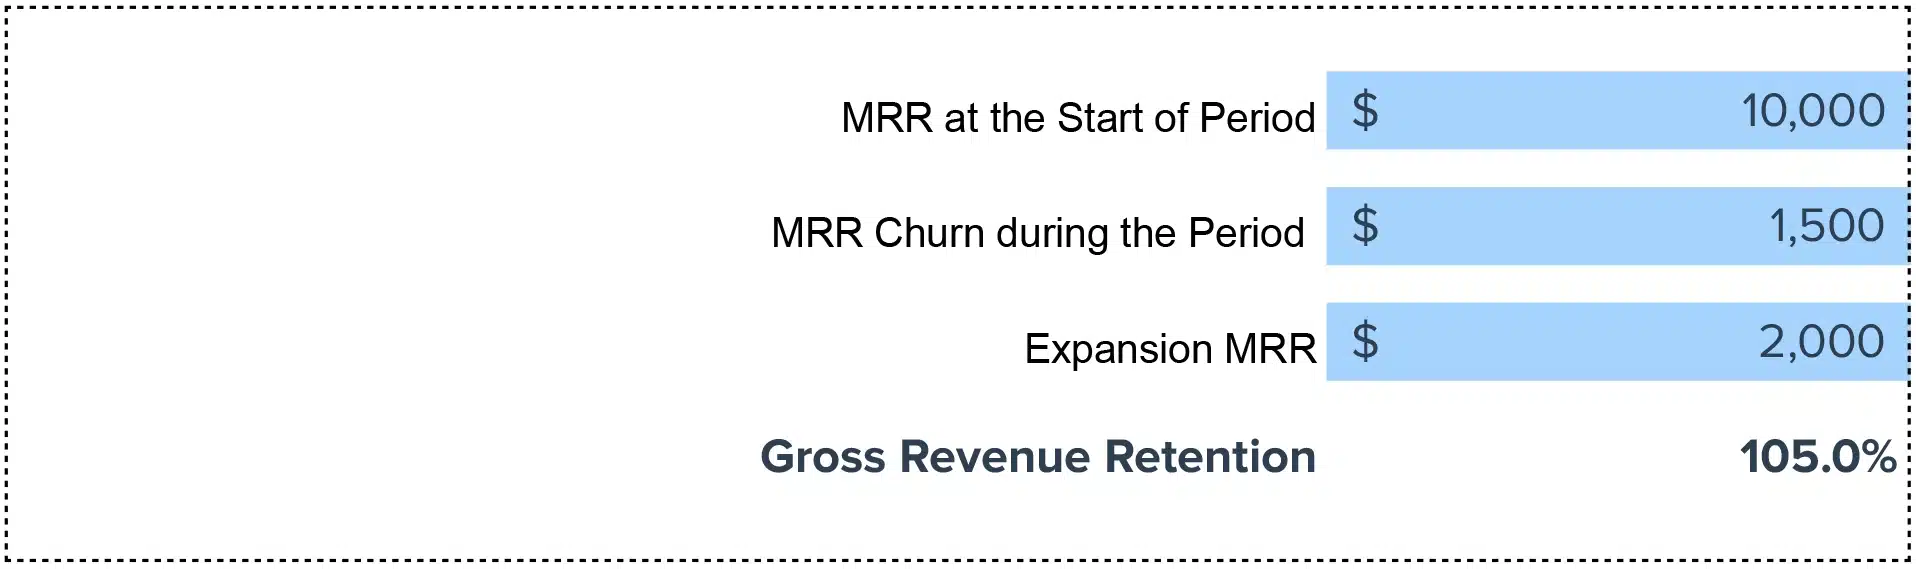 Gross Revenue Retention